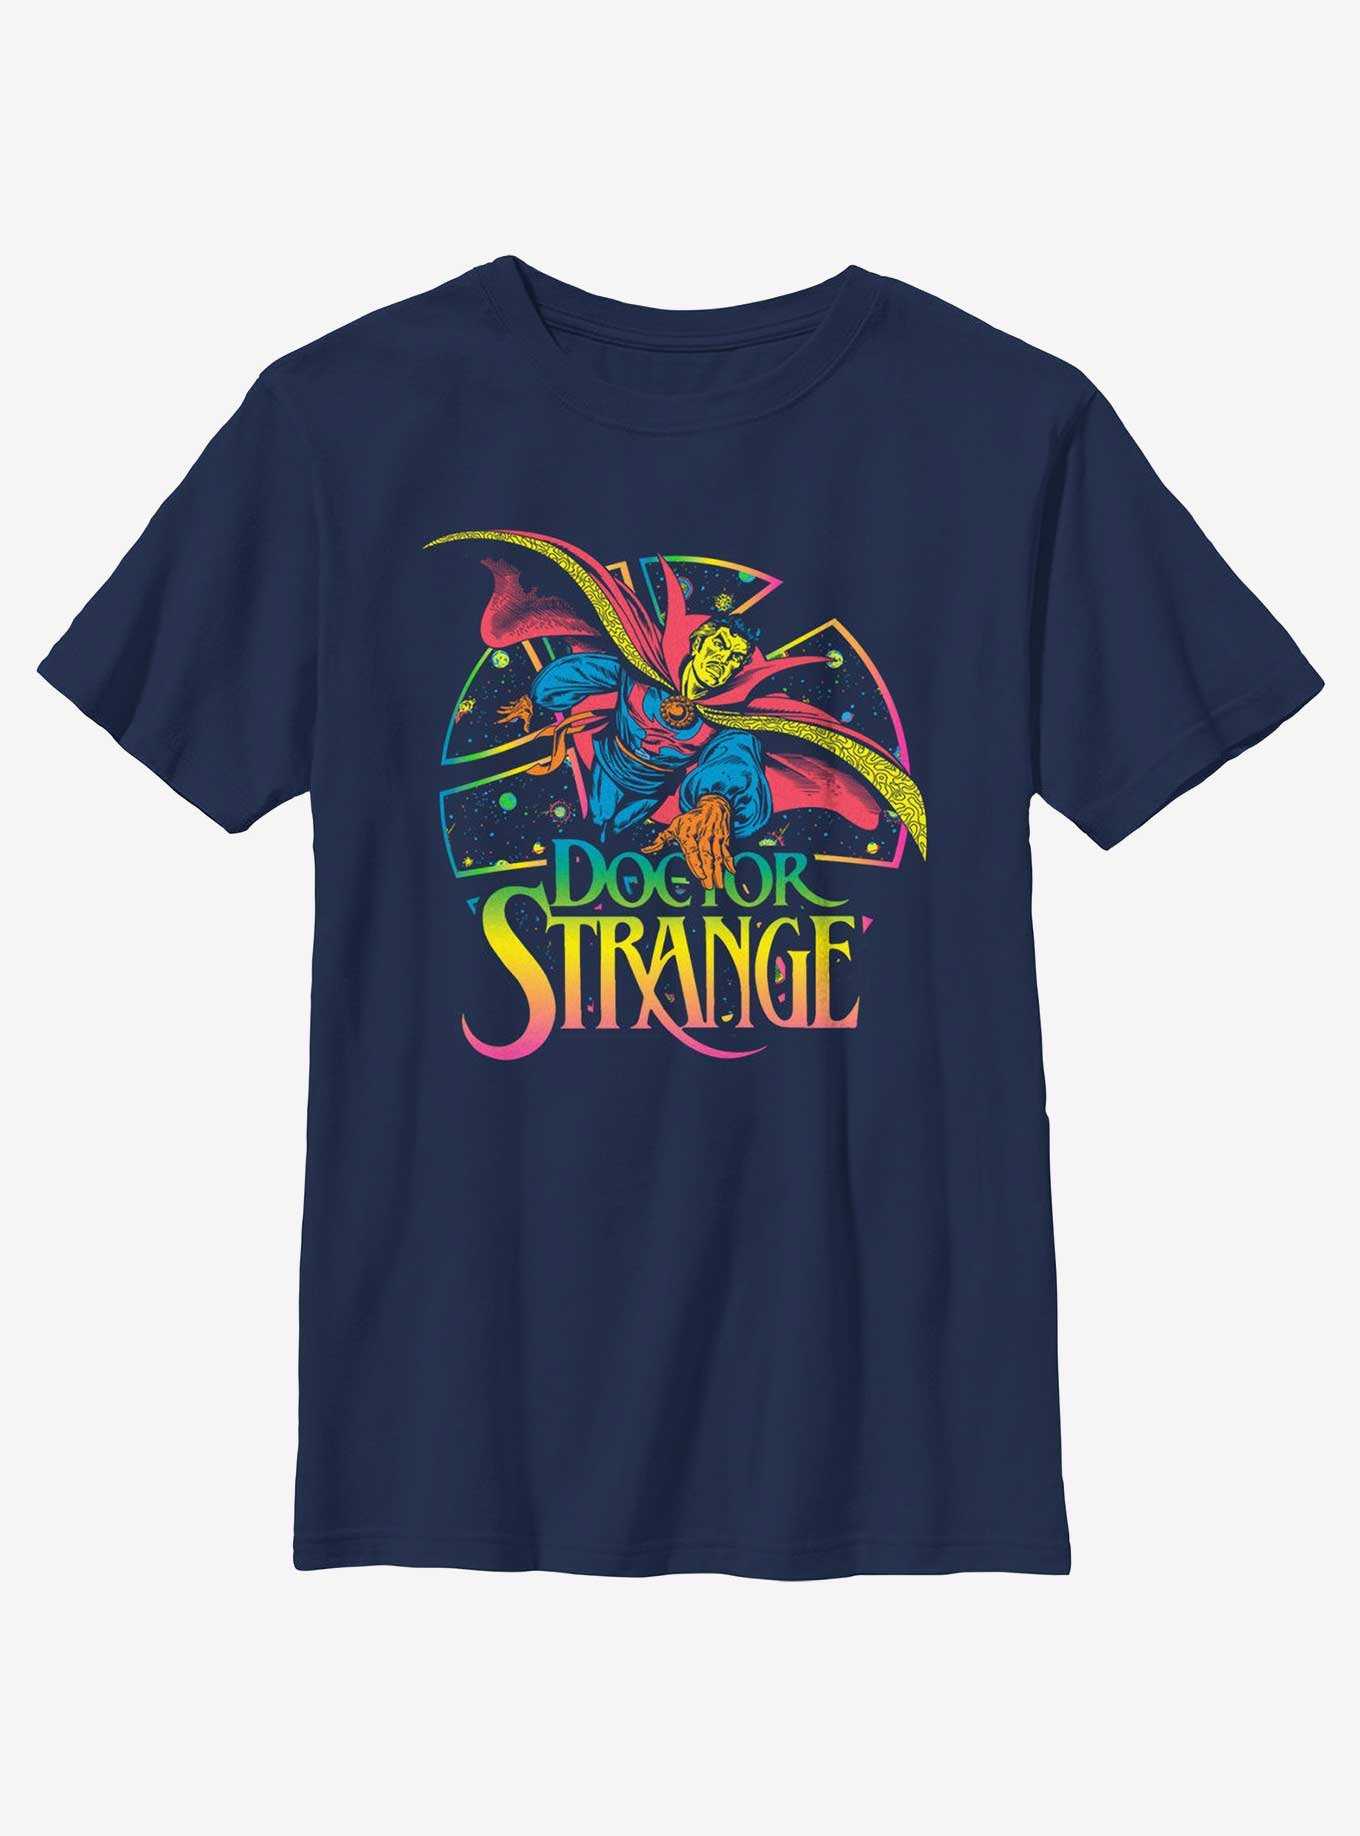 Marvel Doctor Strange Strange Conjurings Youth T-Shirt, , hi-res